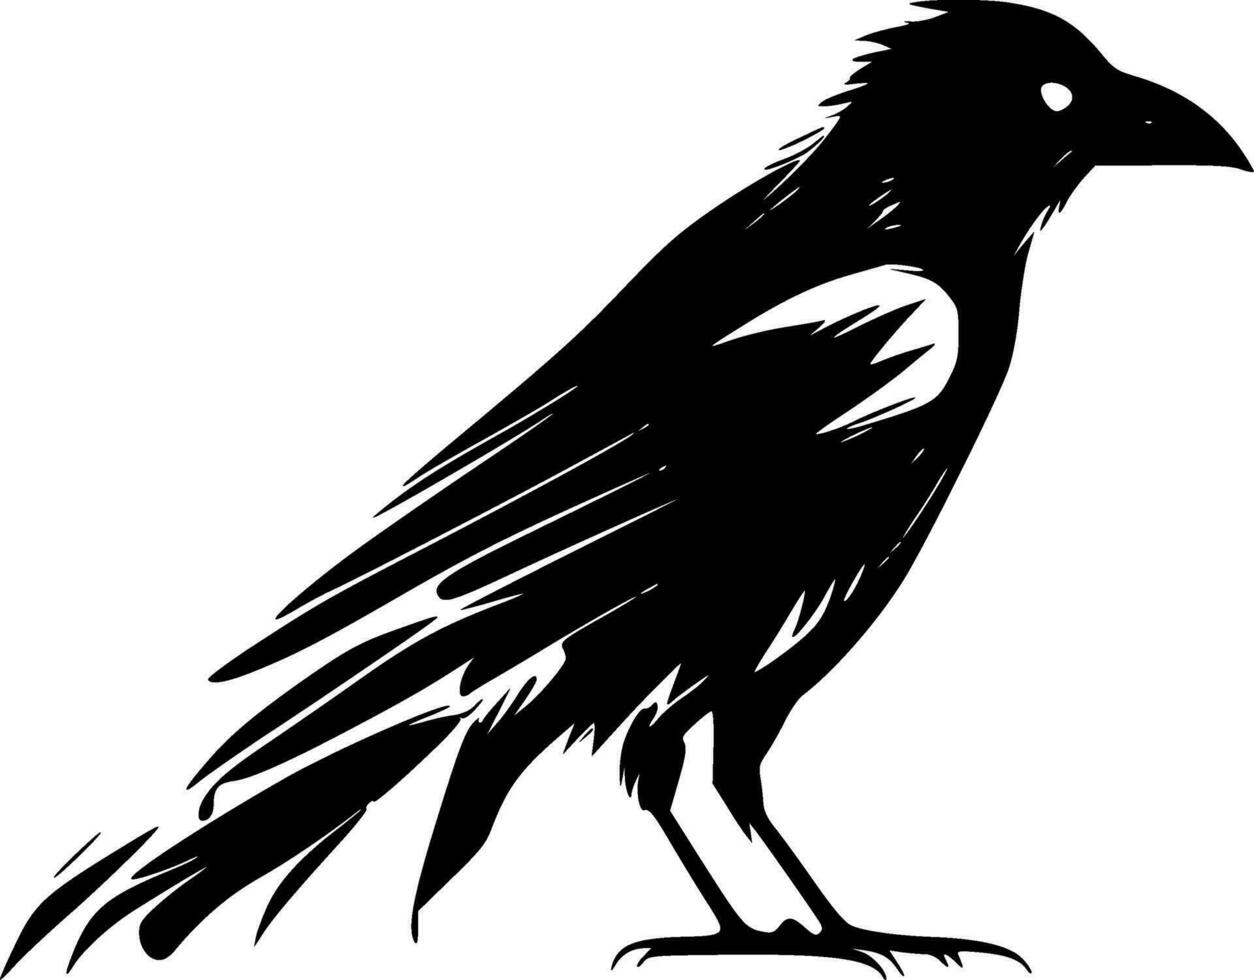 corbeau - haute qualité vecteur logo - vecteur illustration idéal pour T-shirt graphique